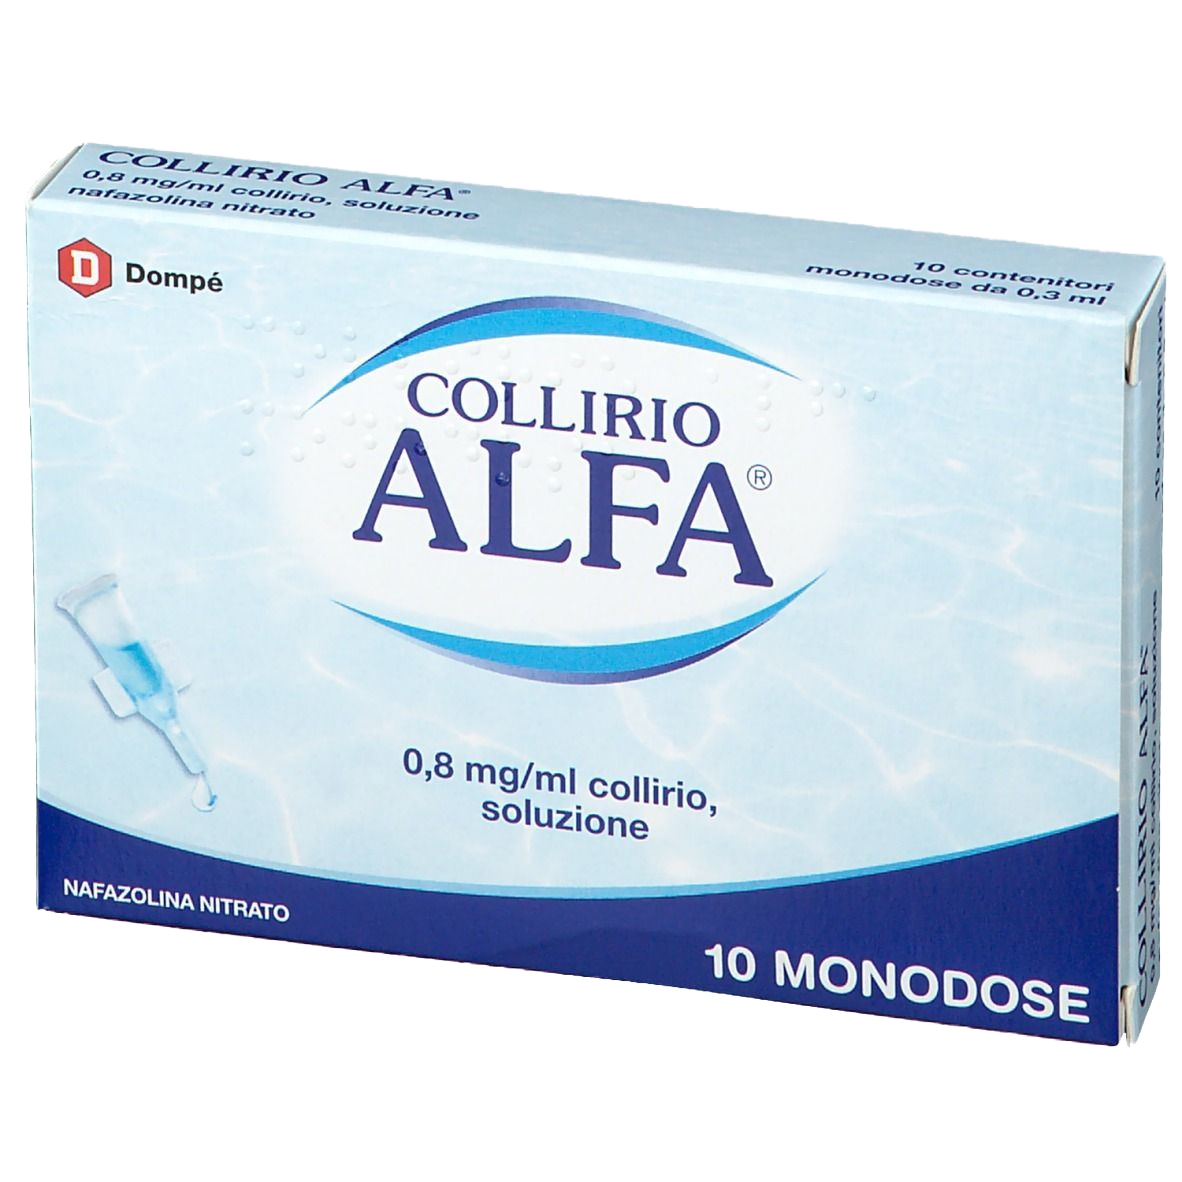 Collirio Alfa 10 contenitori monodose 